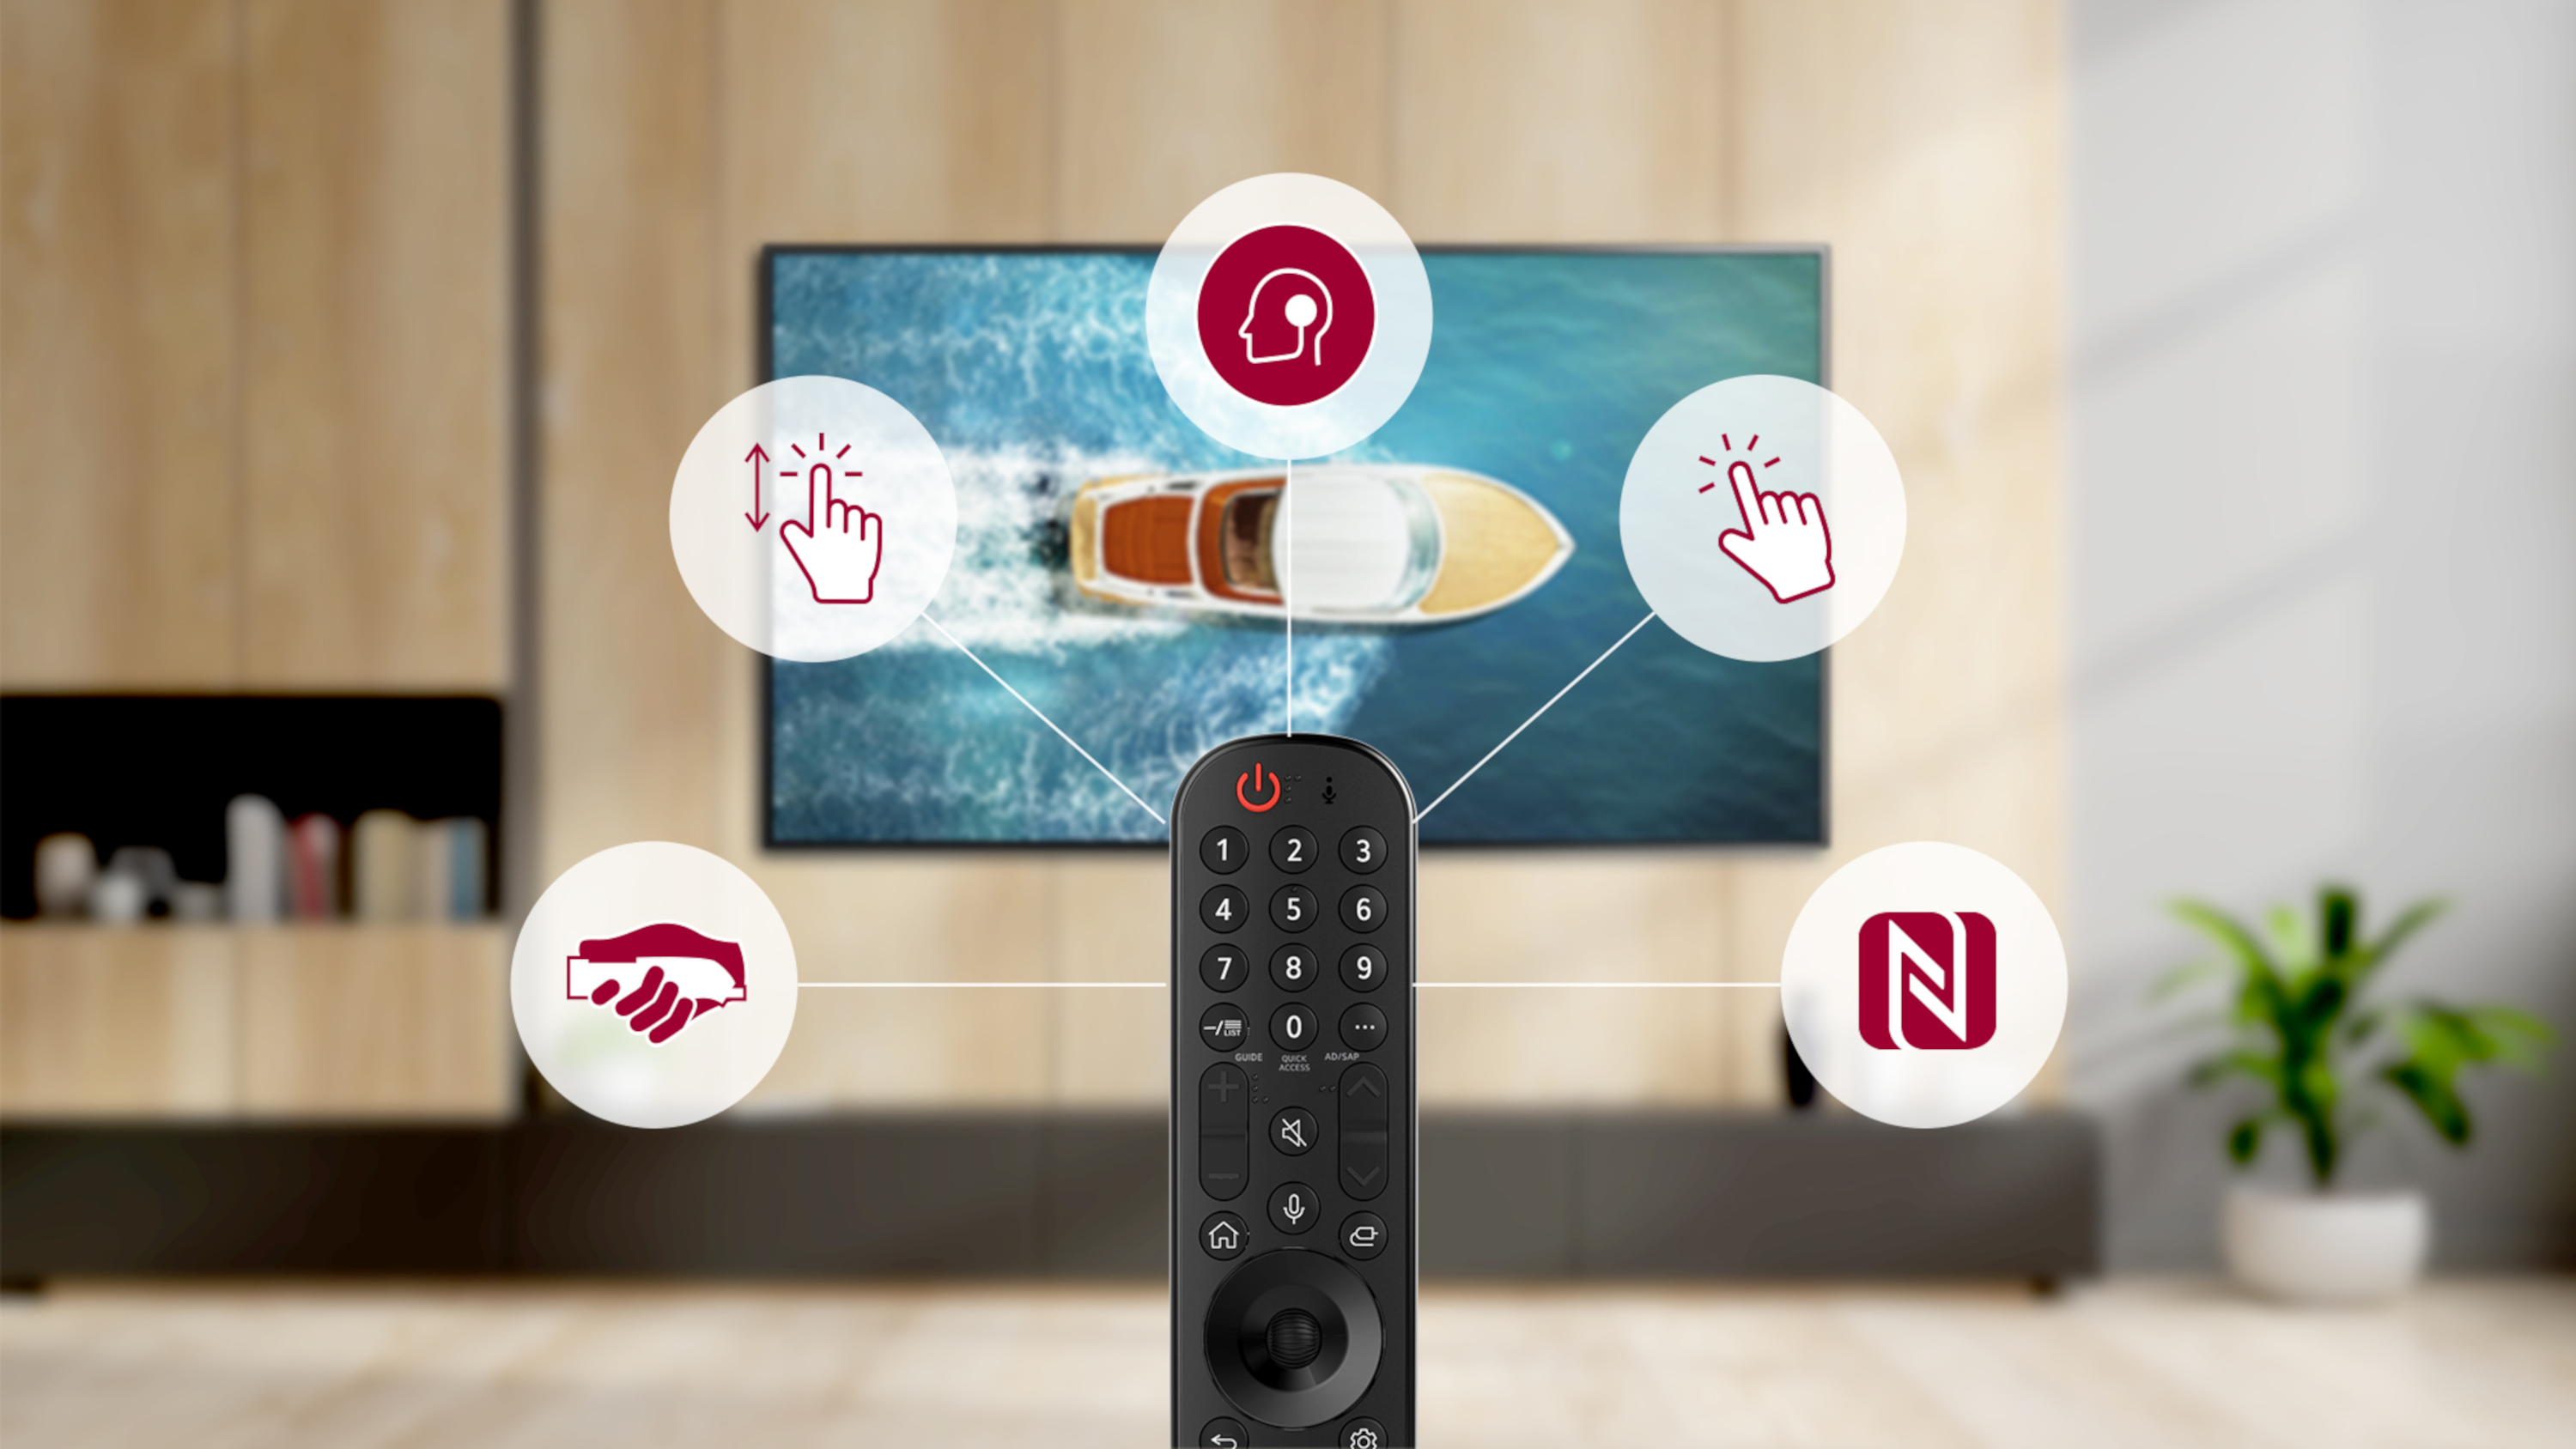 plataforma de smart tv de lg webos 6.0 diseñada para los espectadores que consumen contenido hoy en día